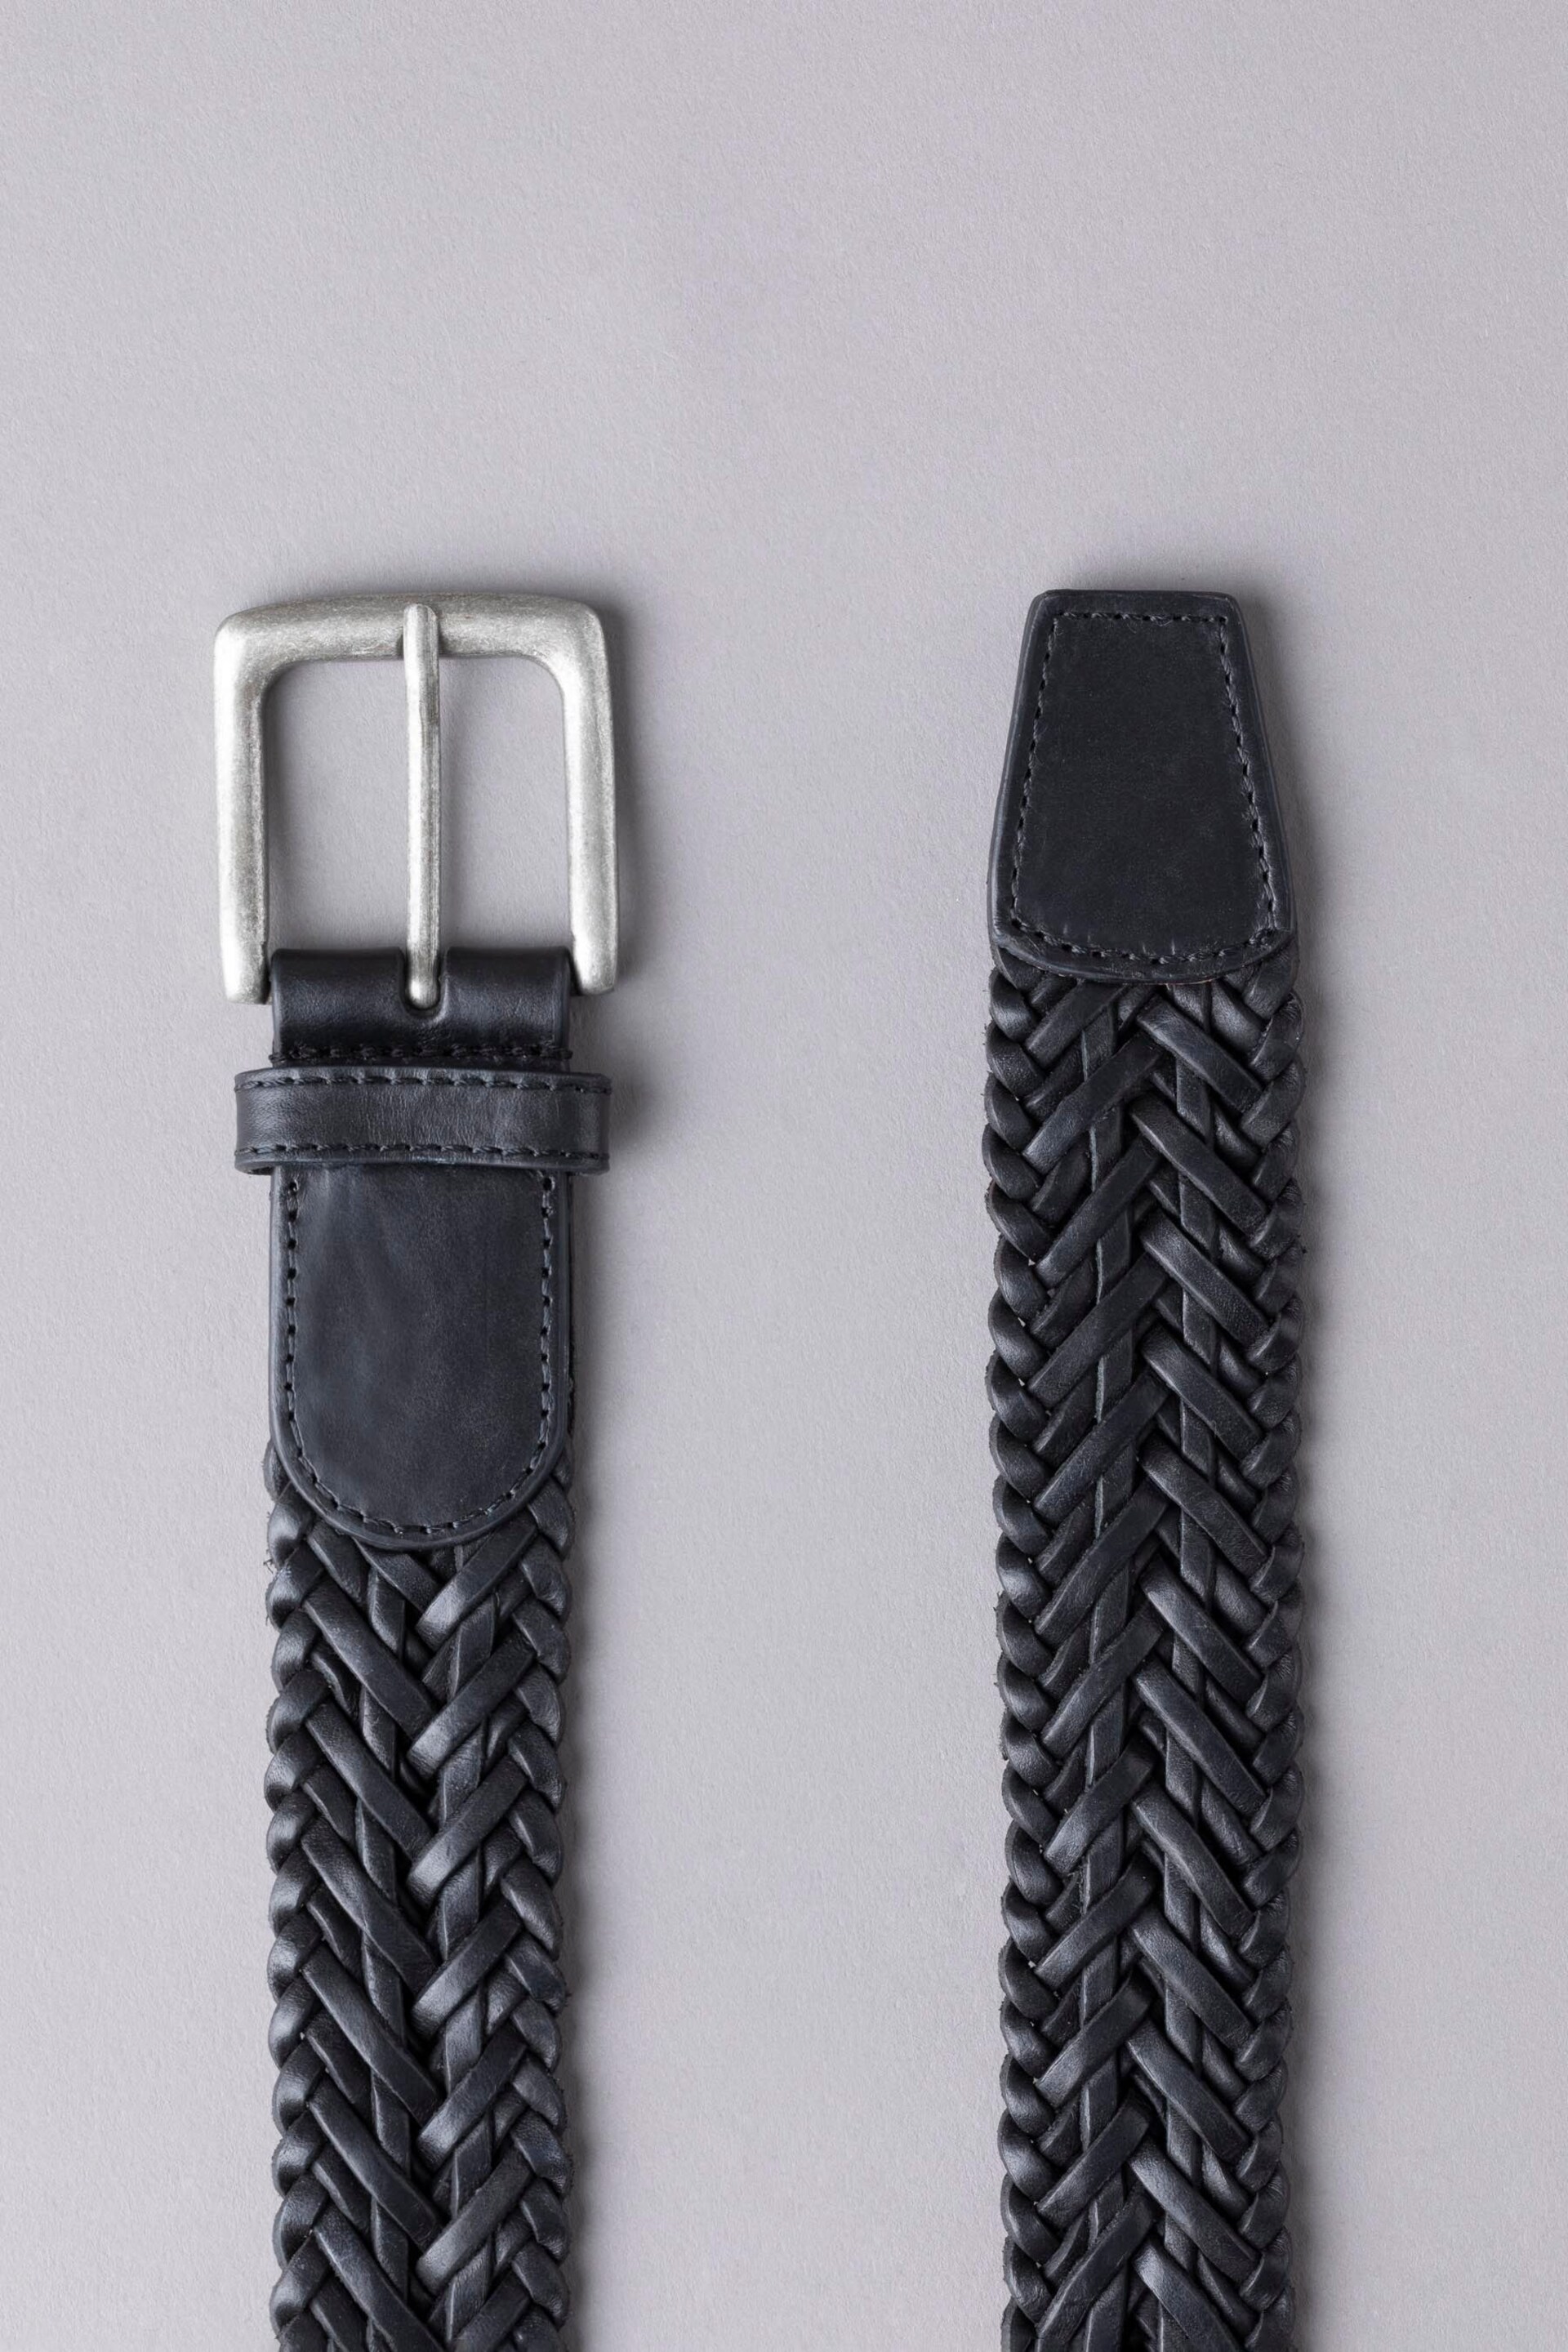 Lakeland Leather Black Howbeck Leather Braided Belt - Image 2 of 3